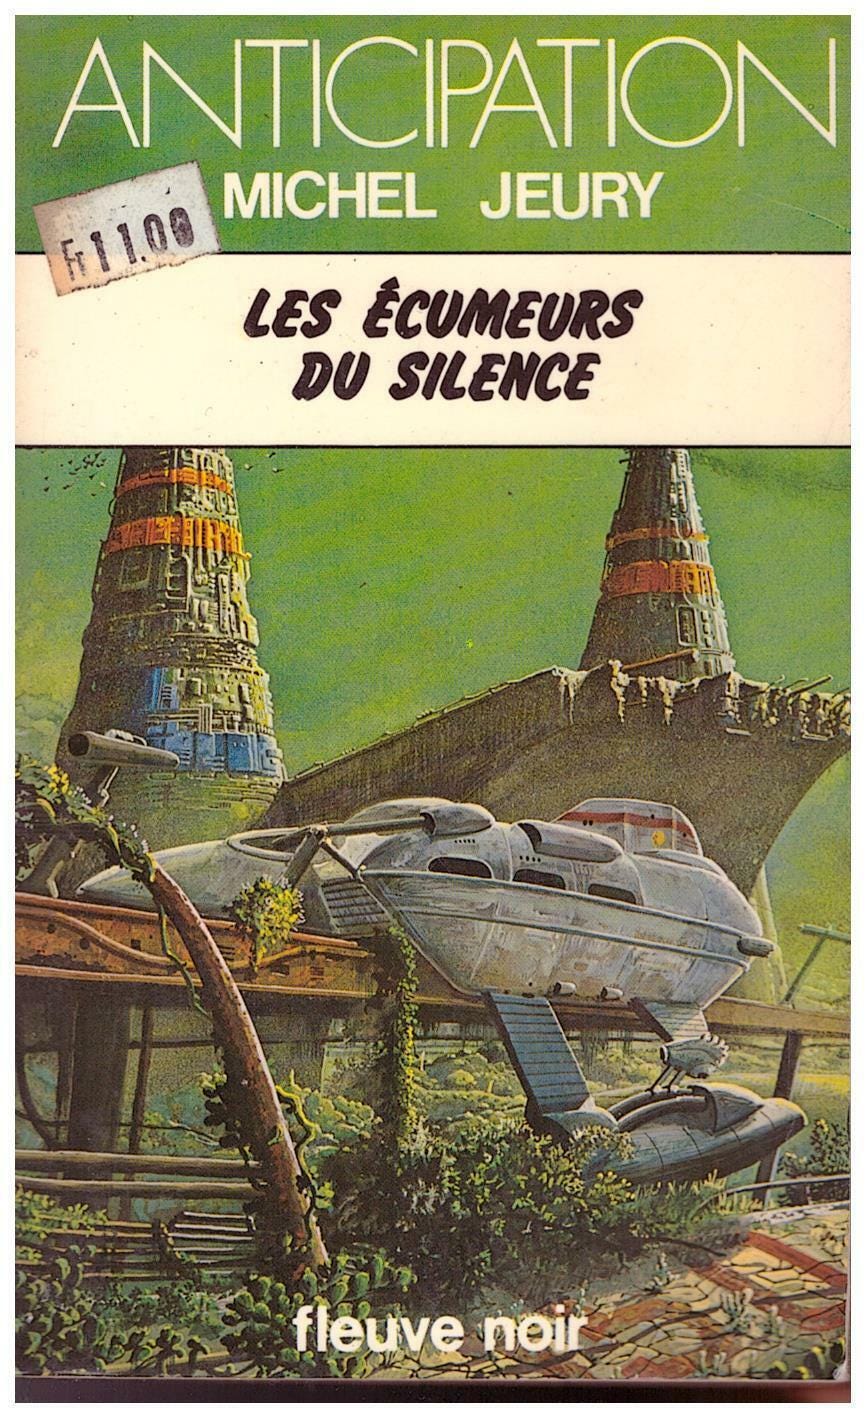 Les écumeurs du silence - Michel Jeury - Fleuve Noir Anticipation 1980 [BE]  | eBay